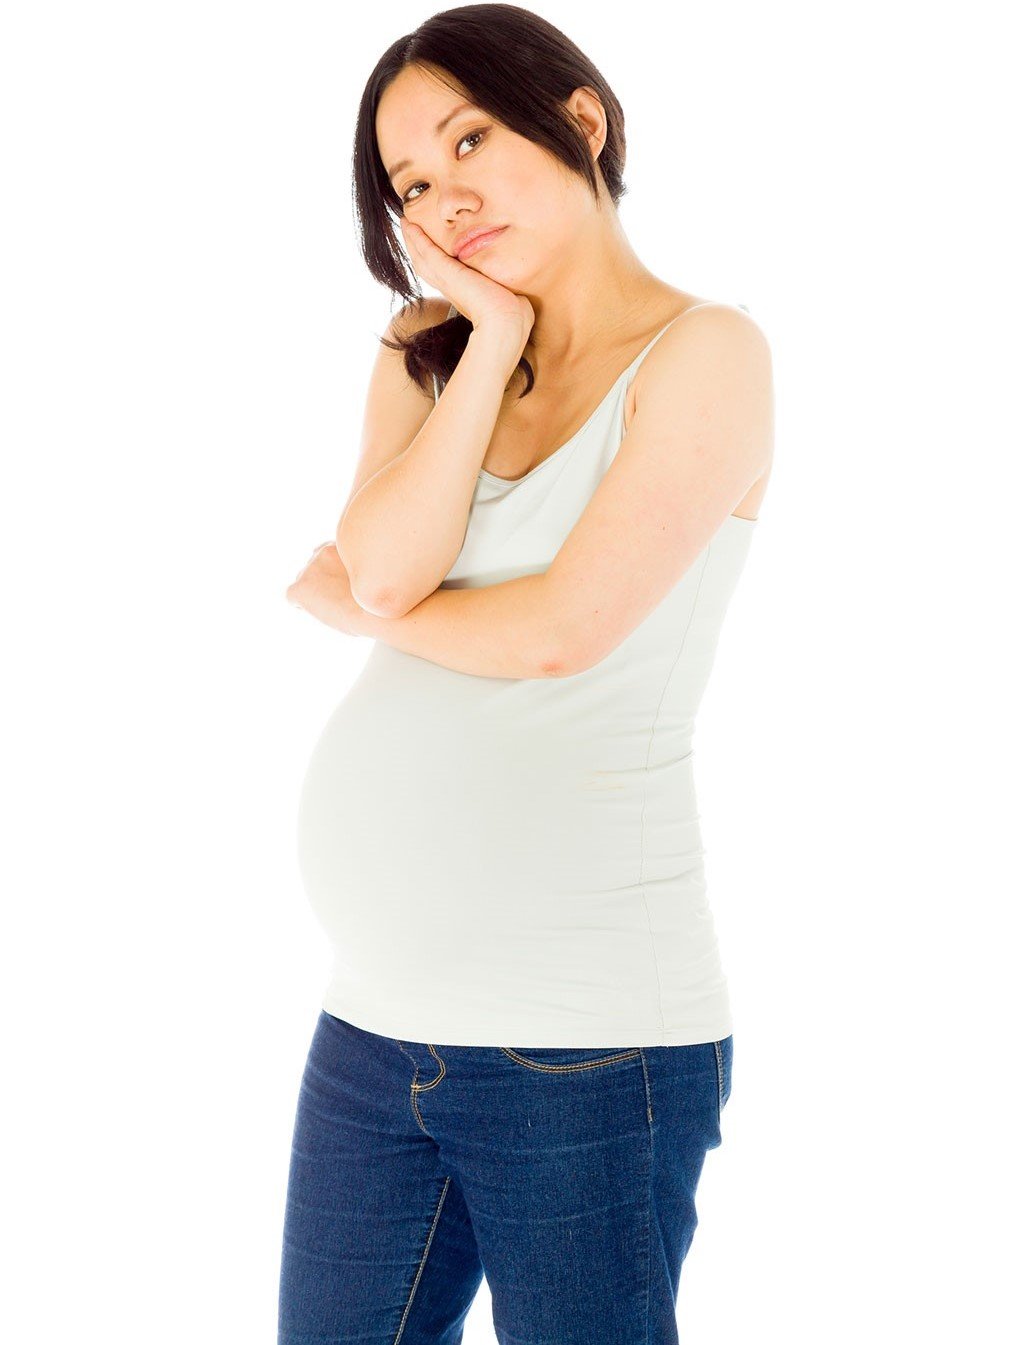 Các cơn co thắt tử cung thường xuất hiện trong tuần thai này.  (Ảnh: Sưu tầm Internet)